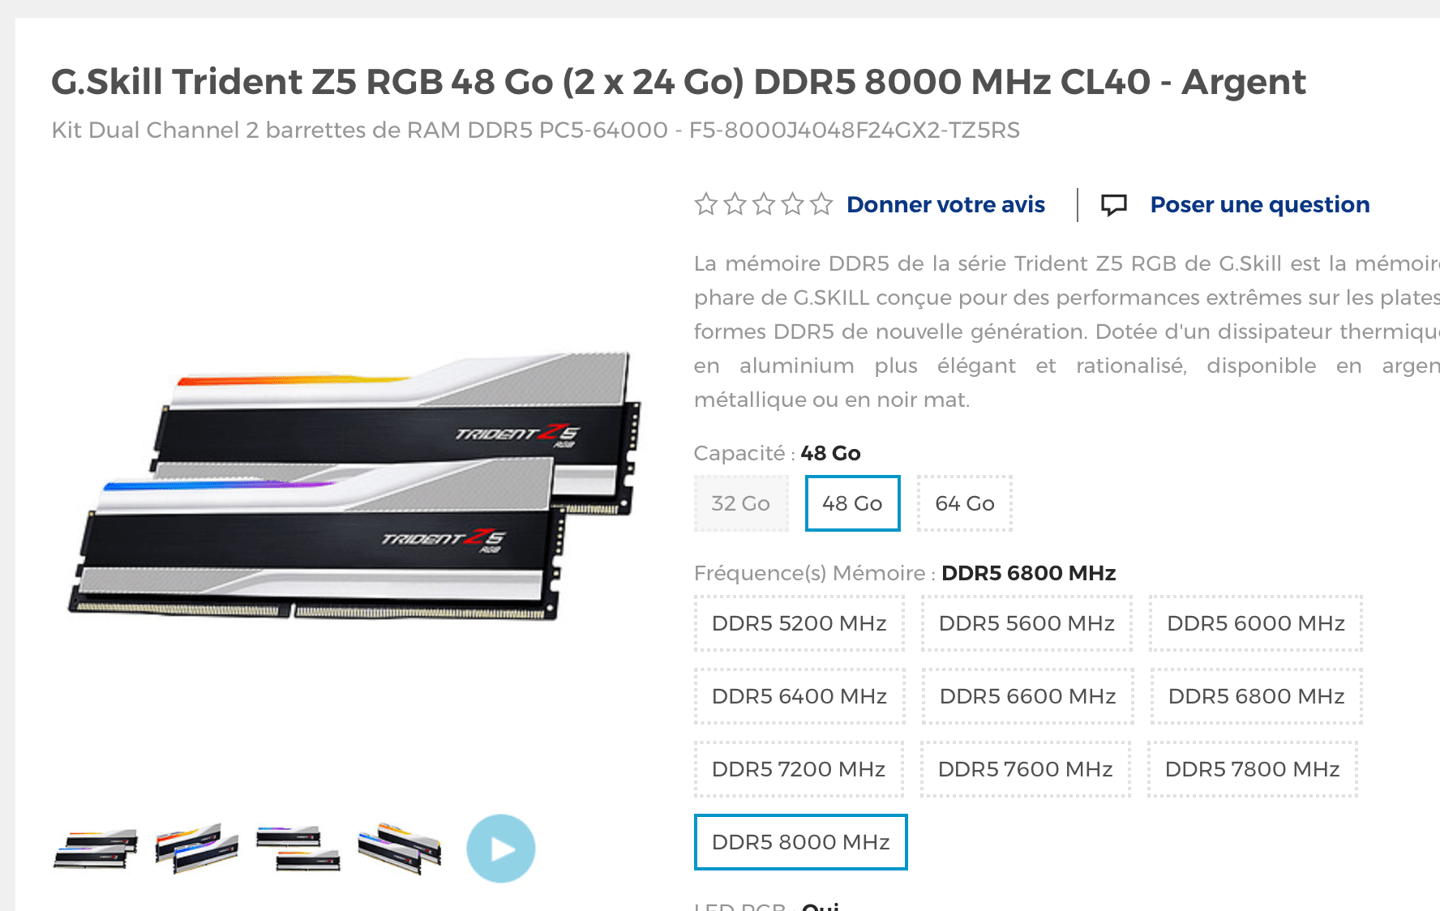 芝奇全新 DDR5-8000 CL38-48-48 48GB 内存套装上市，售价 555 欧元